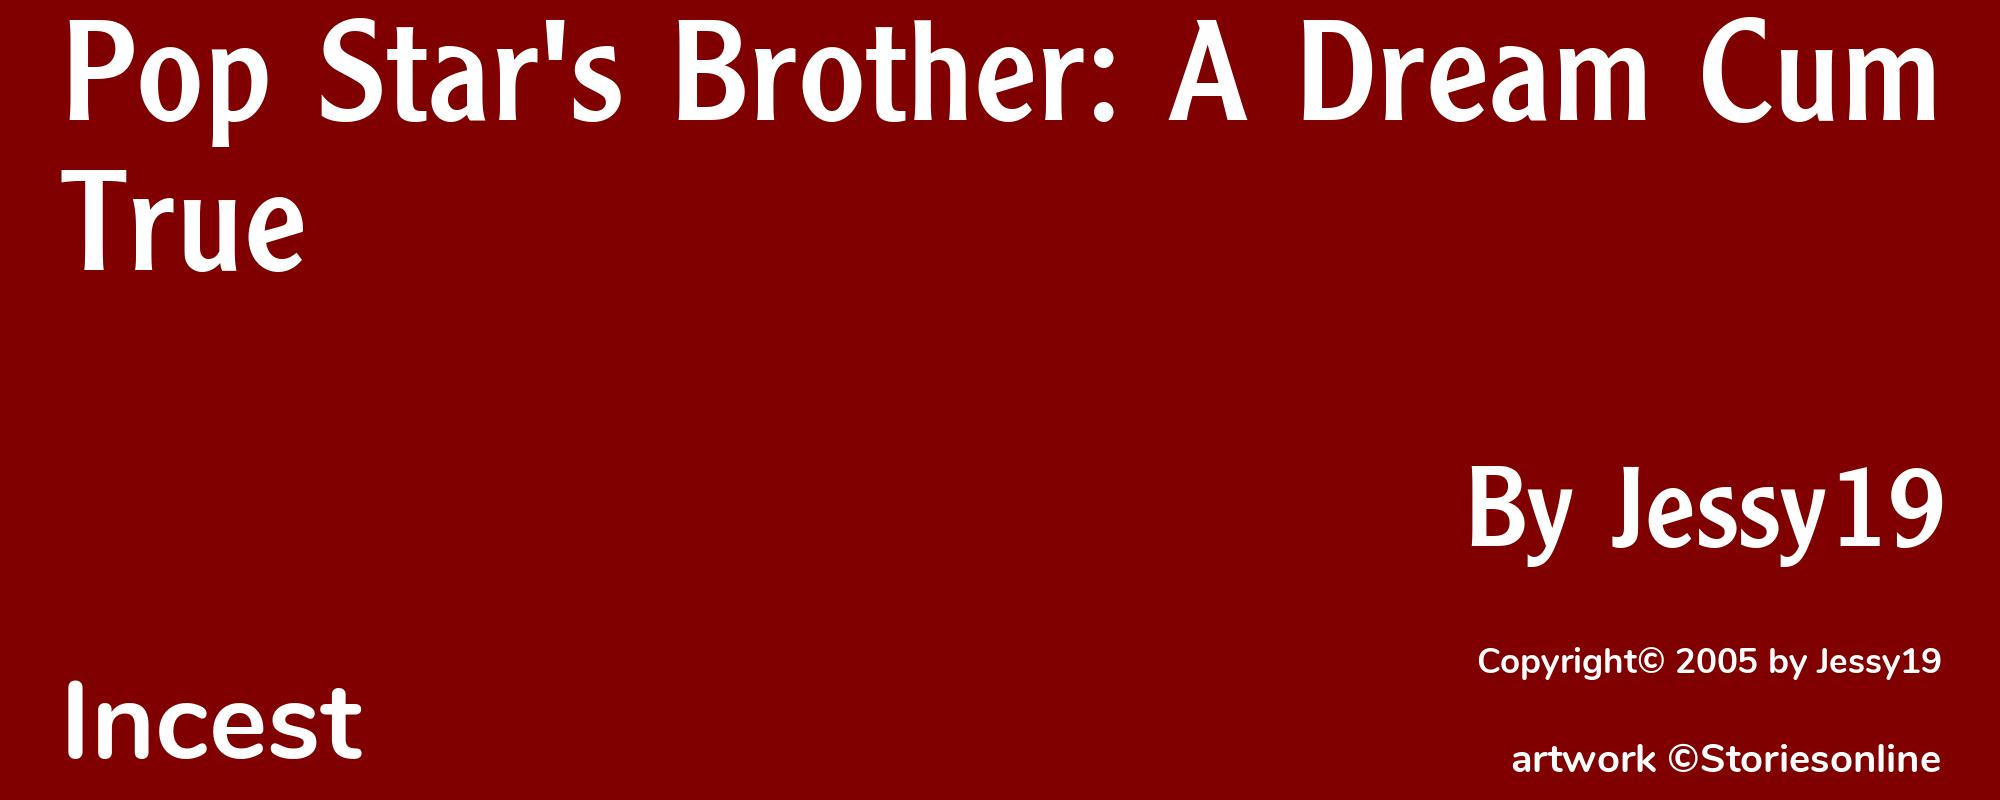 Pop Star's Brother: A Dream Cum True - Cover